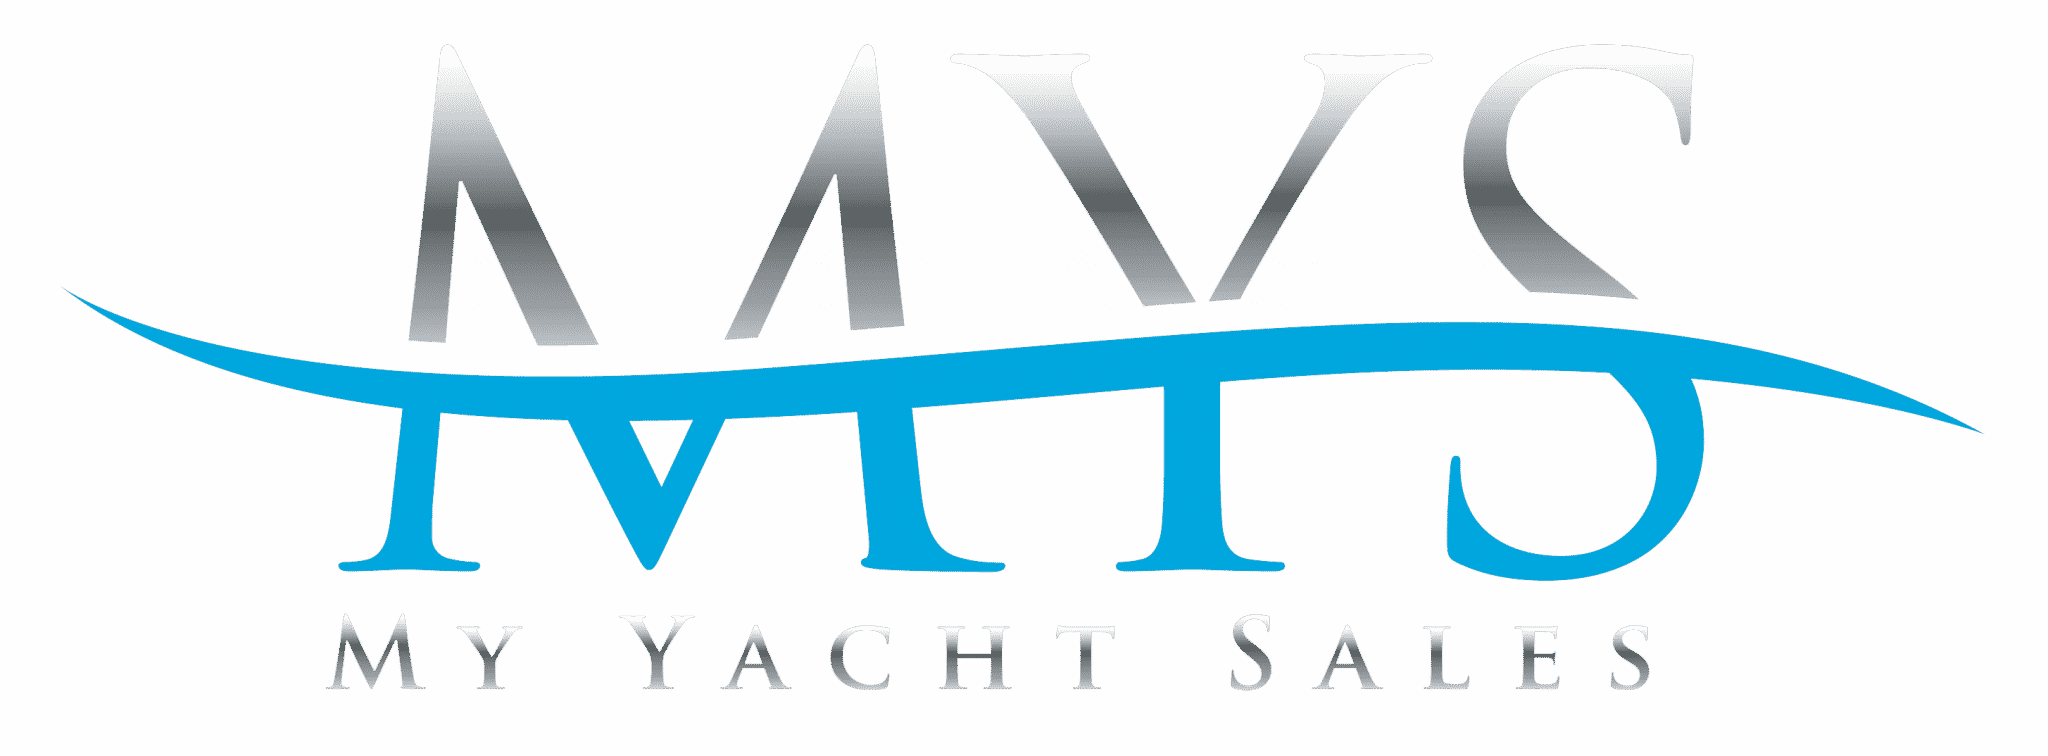 STERLING V 93ft Hargrave Yacht For Sale